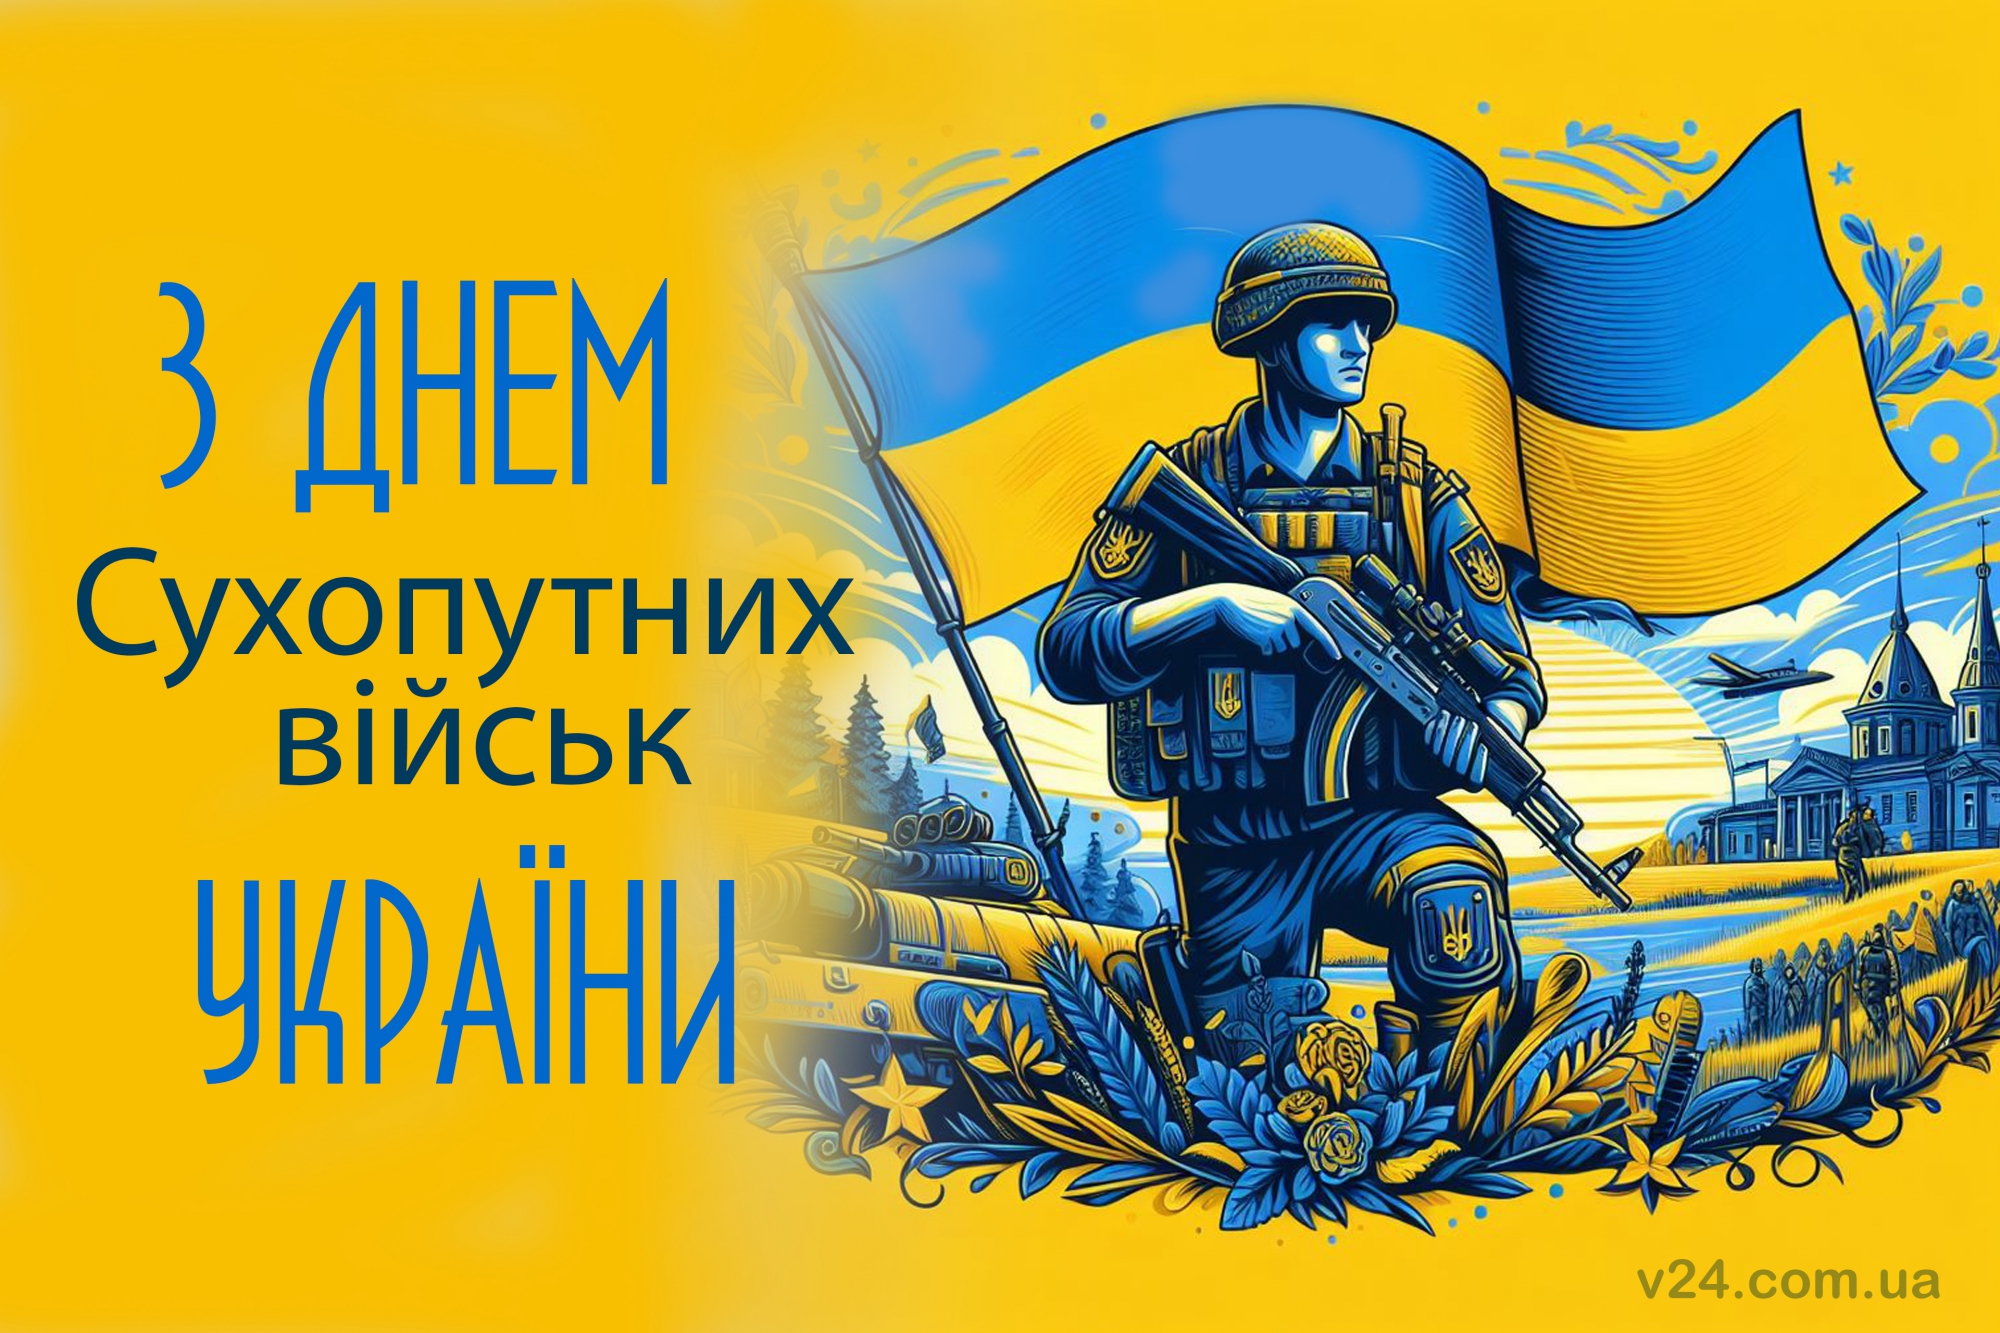 Привітання з нагоди сухопутних військ України у віршах